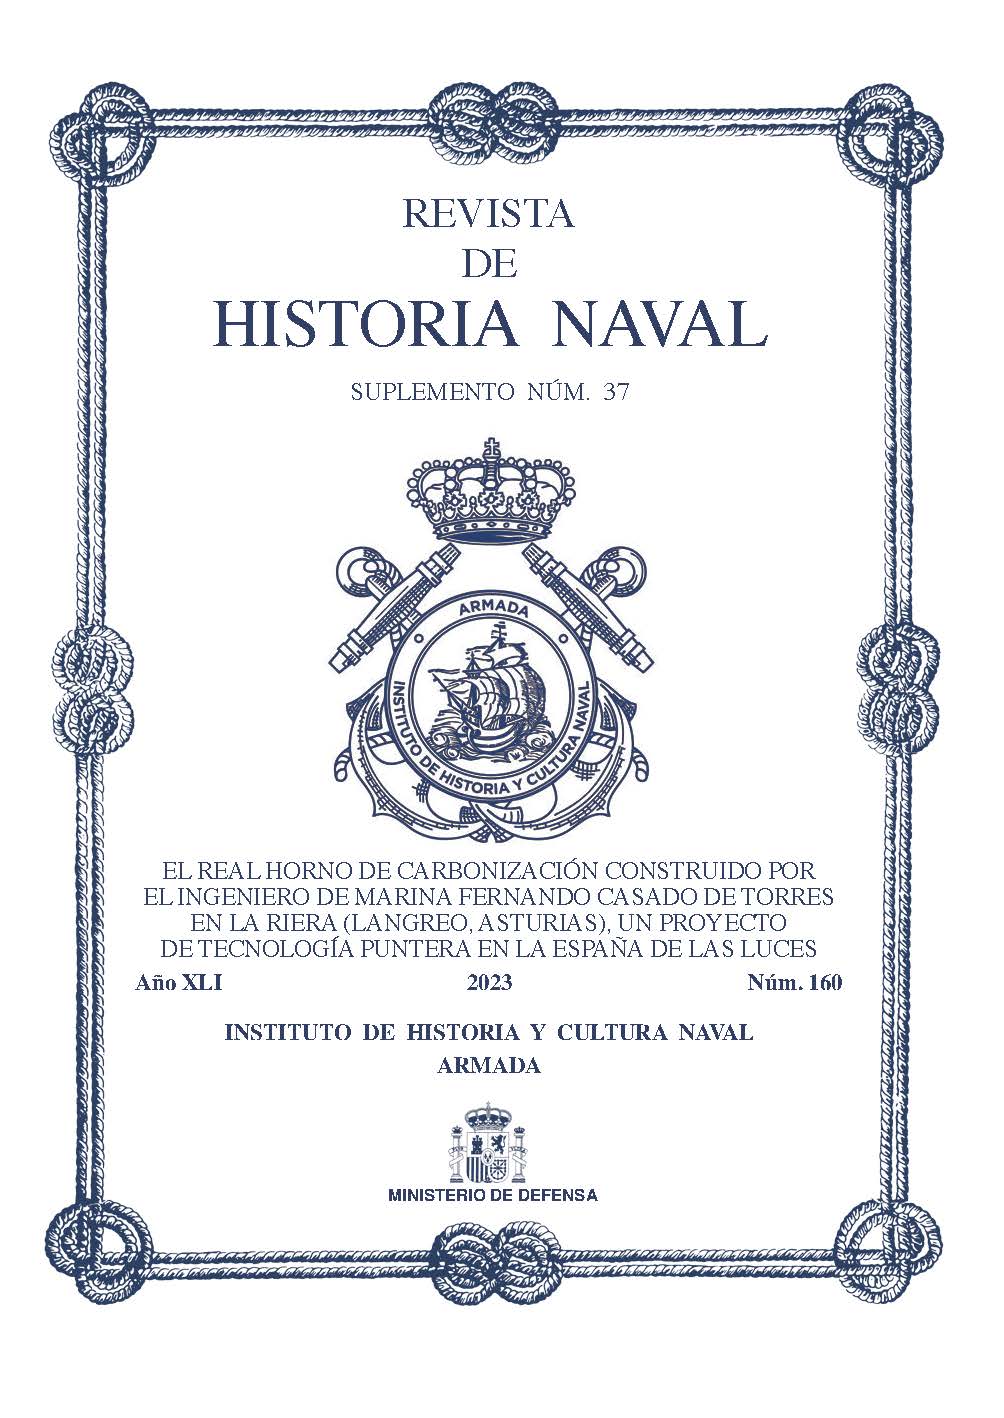 Revista de Historia Naval N.º160 Suplemento N.º 37